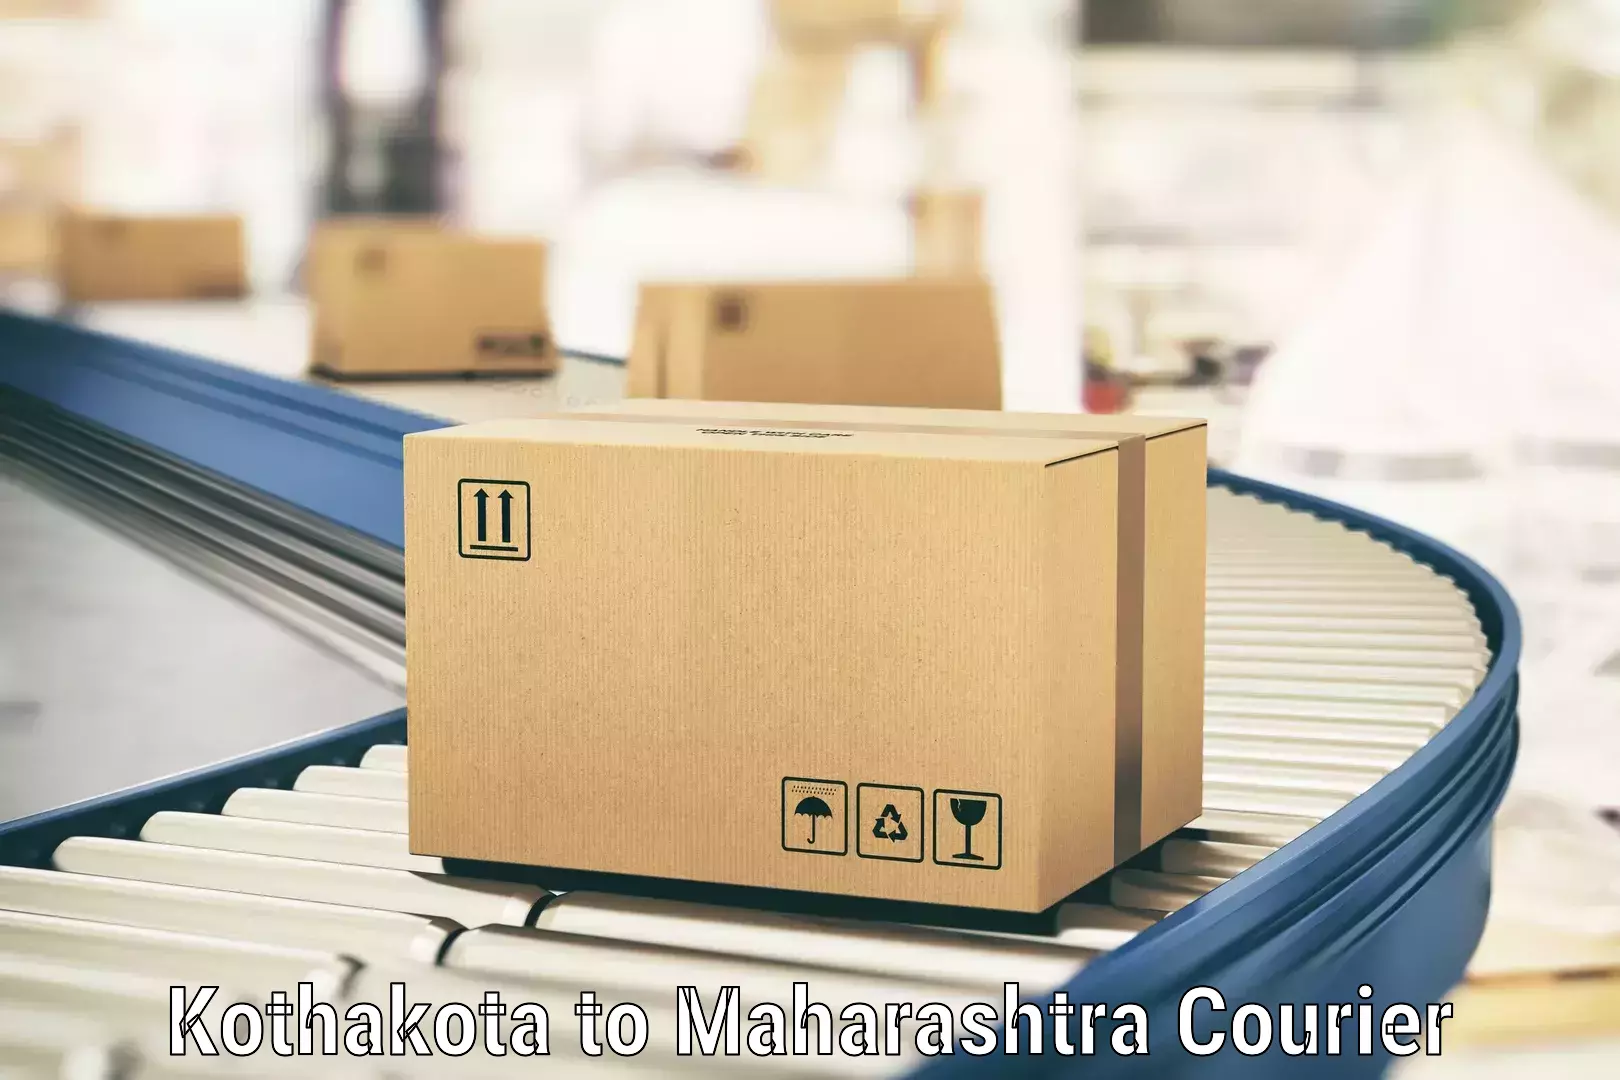 Special handling courier Kothakota to Nashik